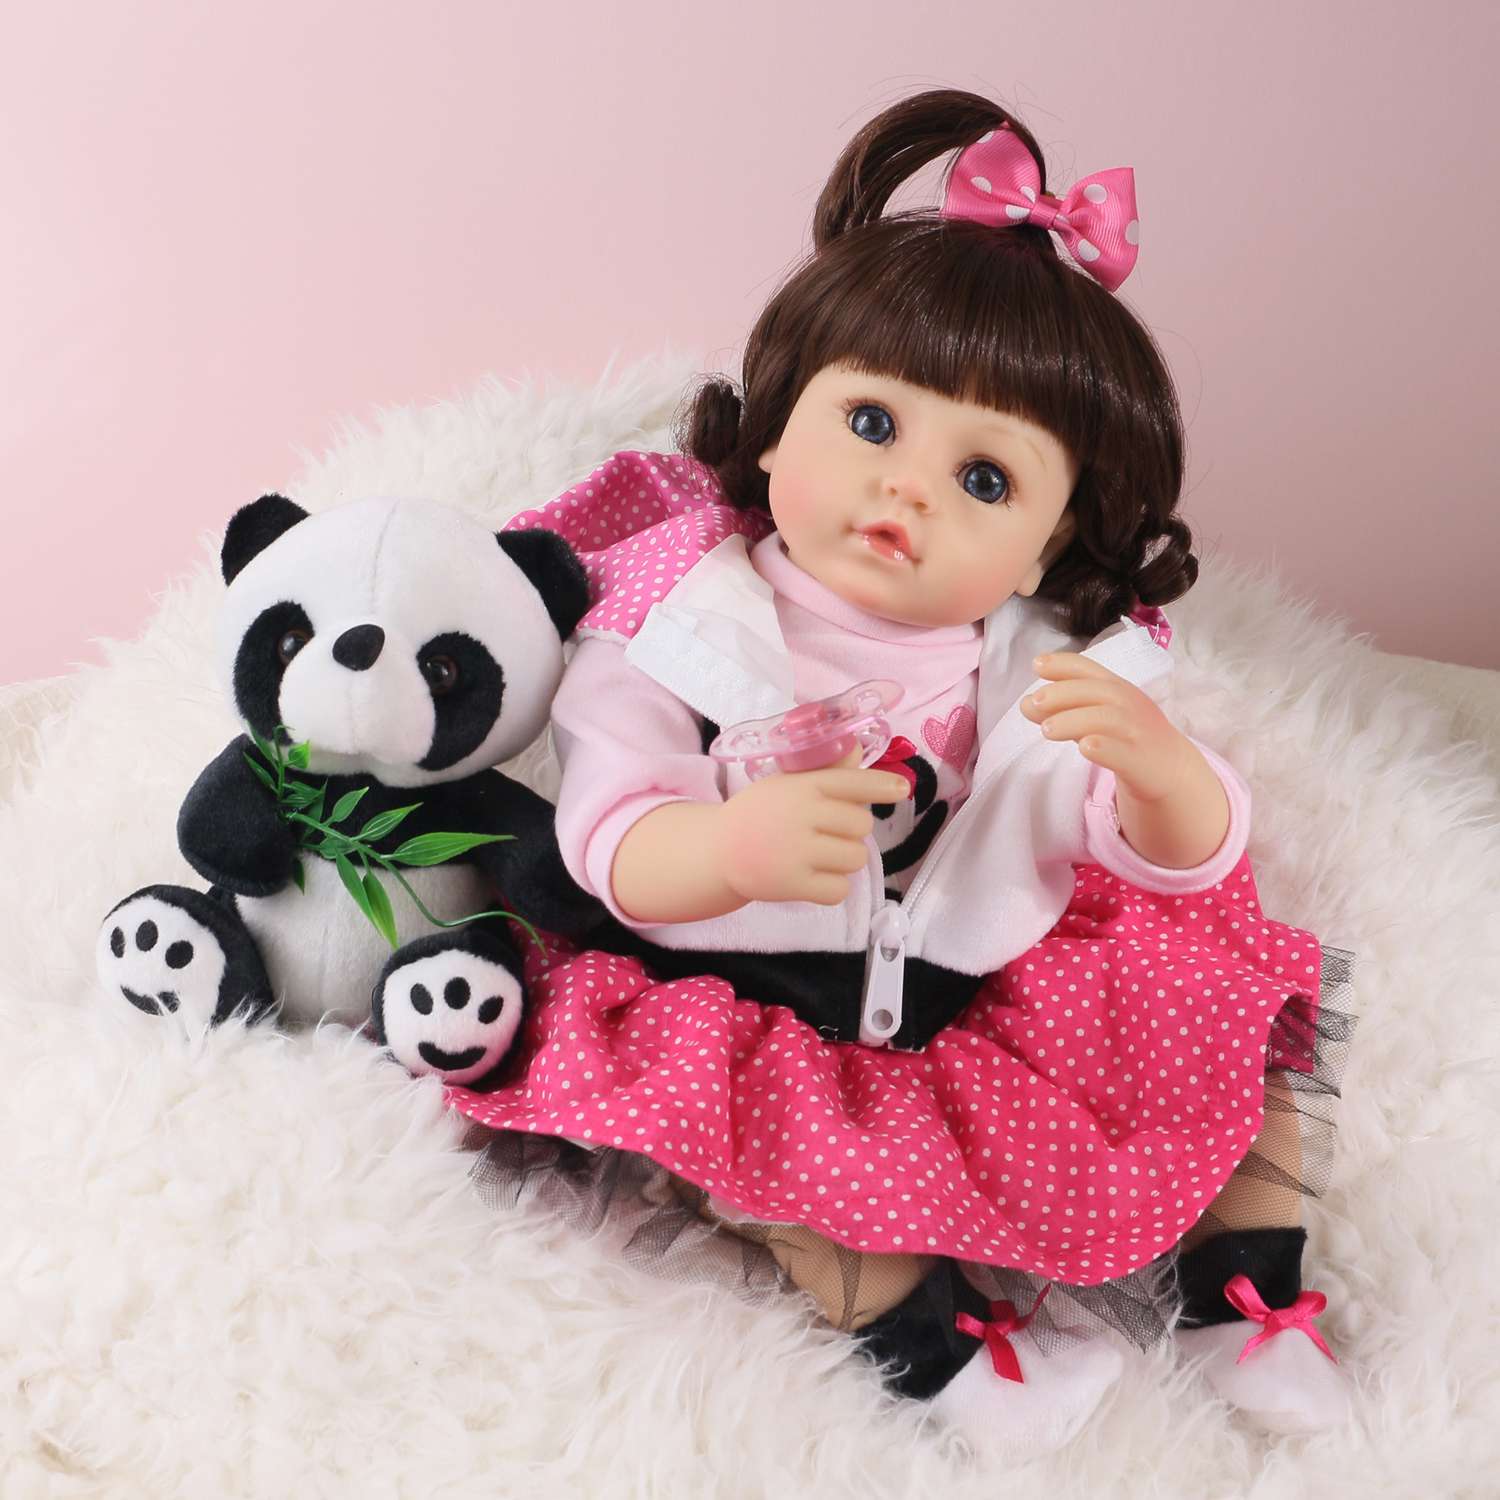 Кукла Реборн QA BABY Алина девочка большая пупс набор игрушки для девочки 42 см 45003 - фото 3